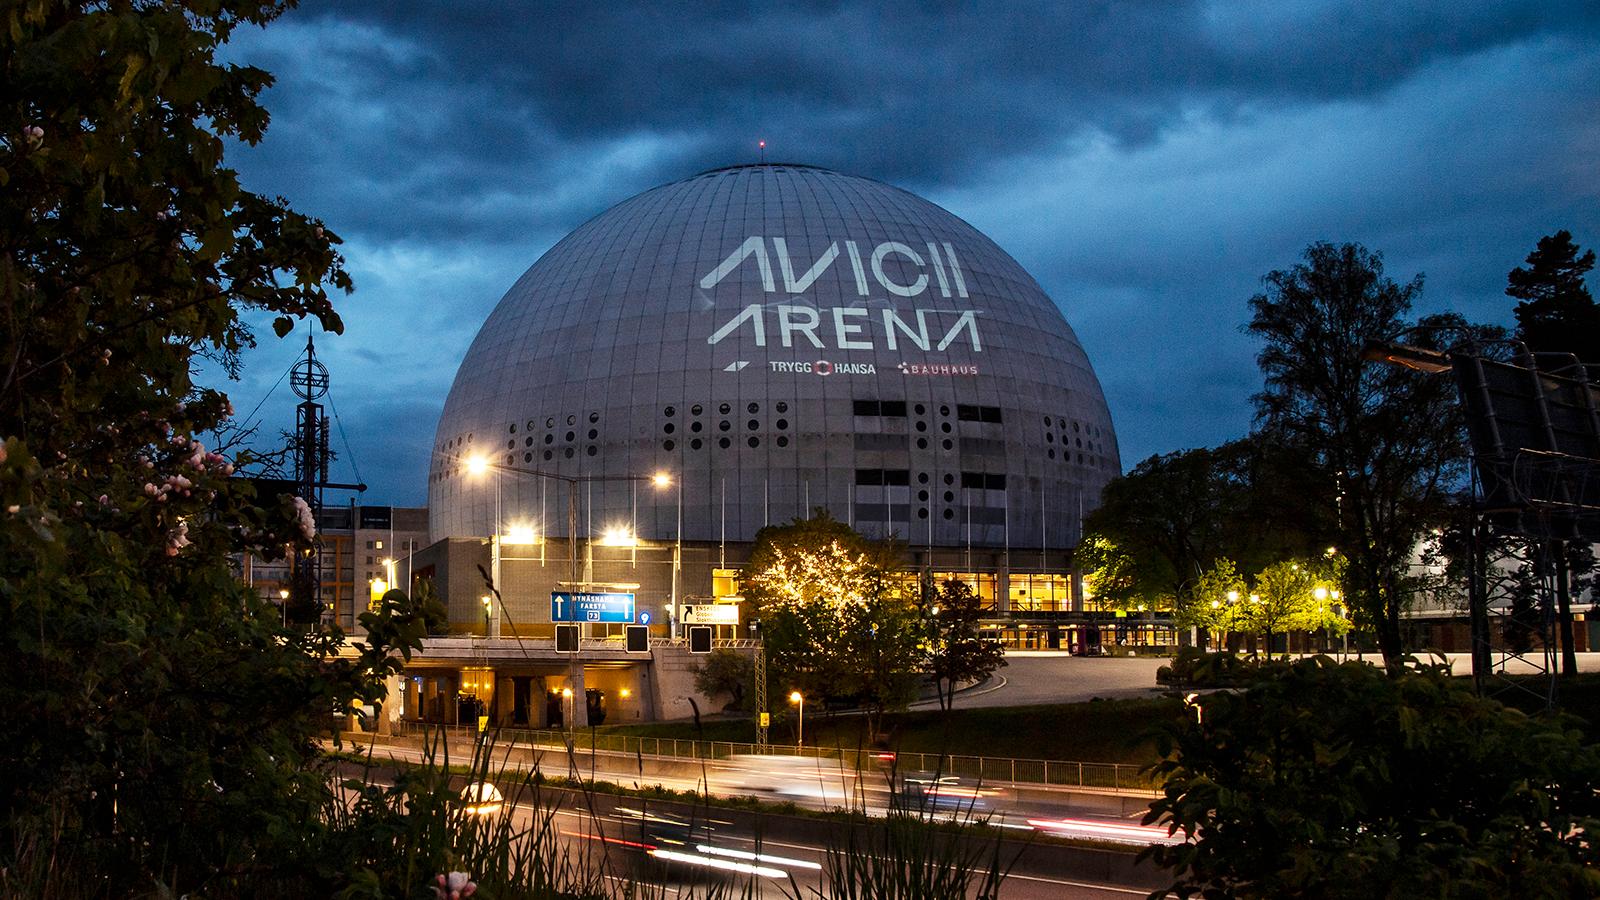 Globen (Avicii arena) i Stockholm.